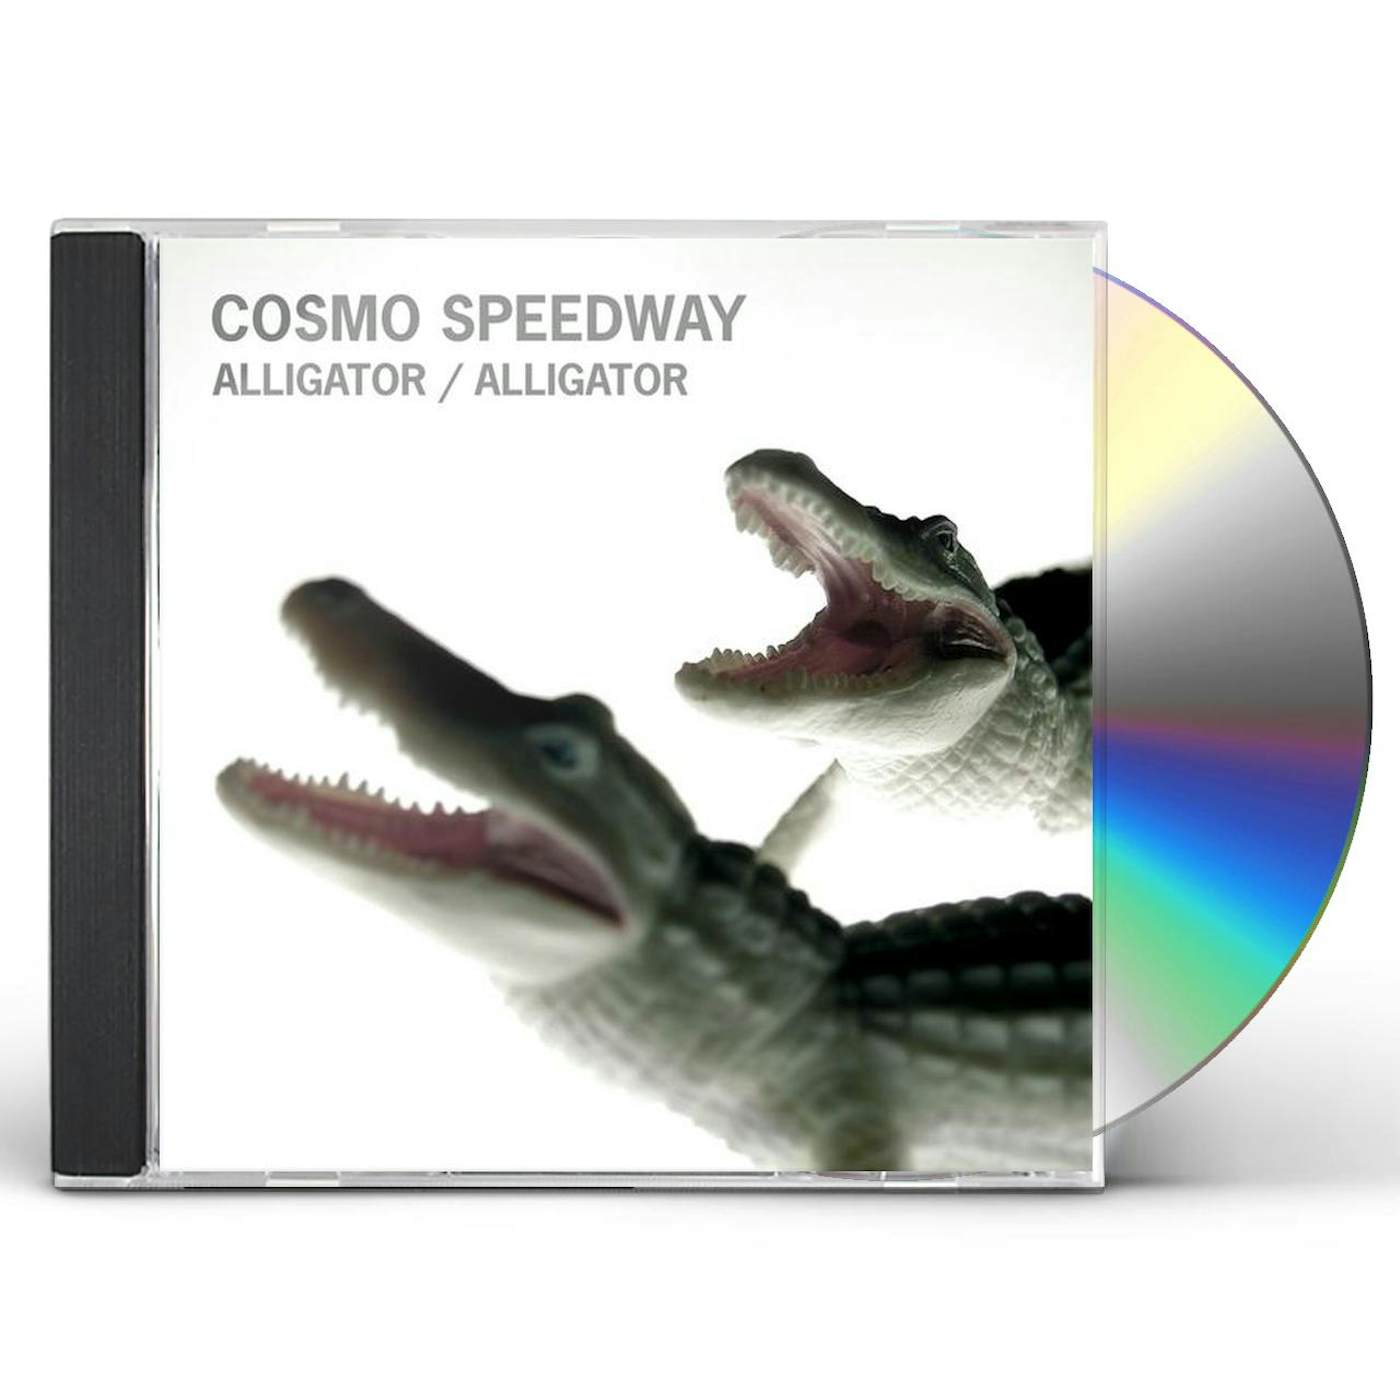 Cosmo Speedway ALLIGATOR ALLIGATOR CD